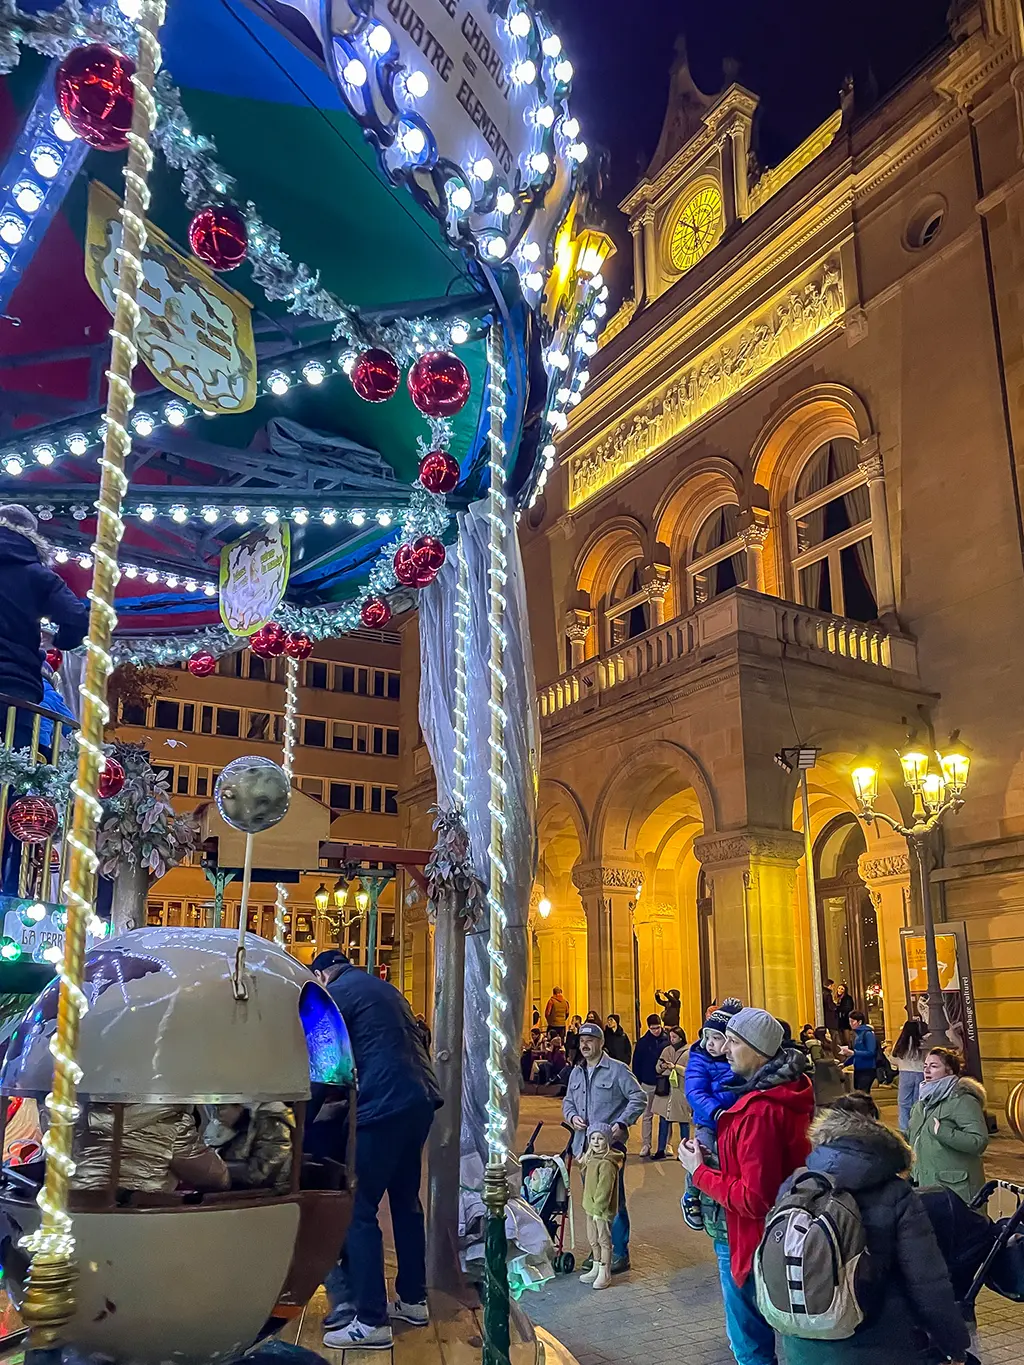 Visiter le marché de Noël de Luxembourg en 2022